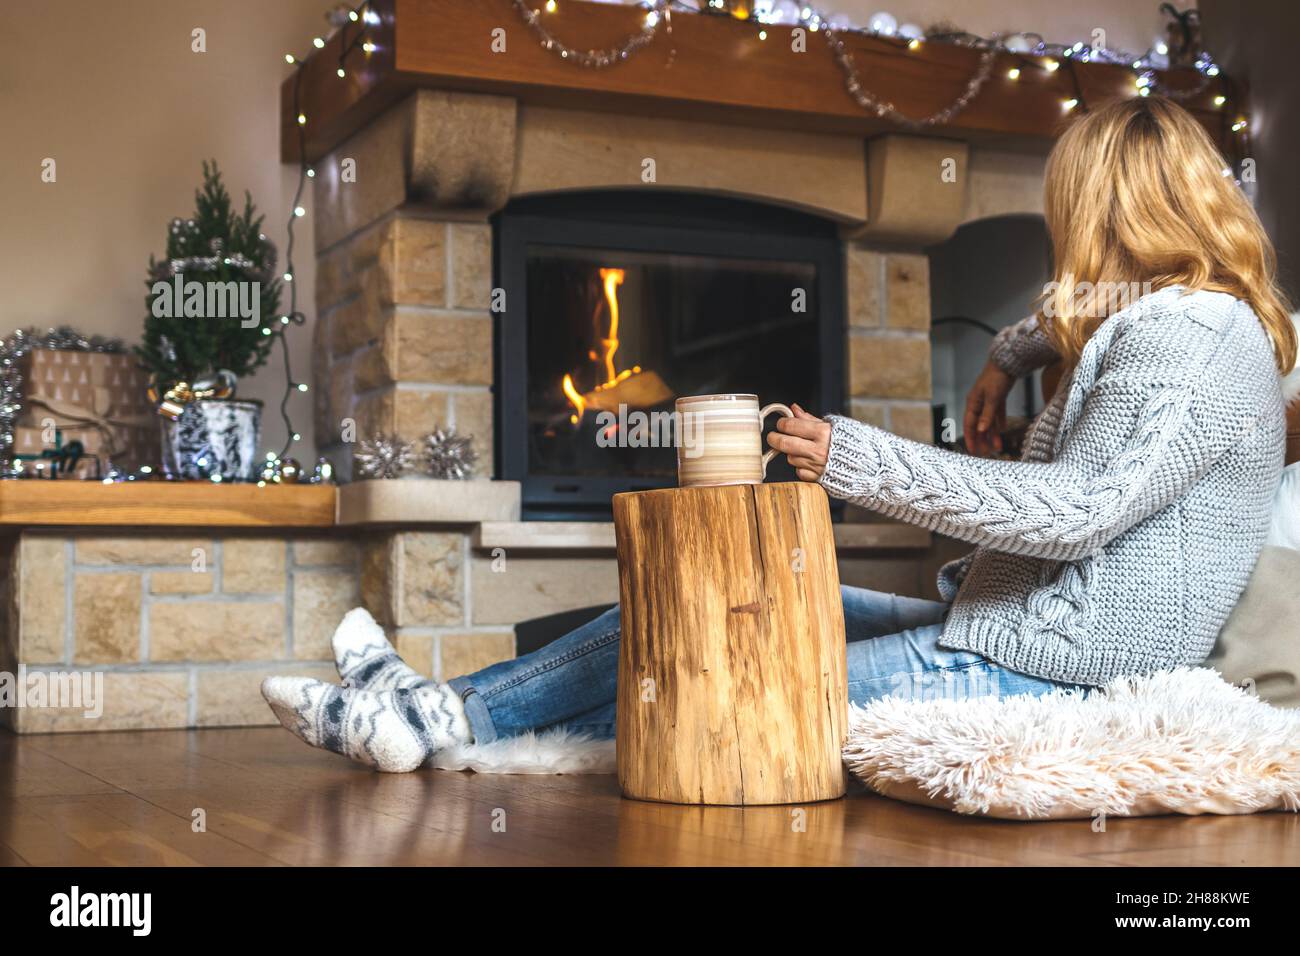 Entspannung während des weihnachtsaufkommens. Frau trinkt Kaffee vor dem  Kamin im skandinavischen Zuhause. Baumstumpf als Beistelltisch aus Holz  Stockfotografie - Alamy